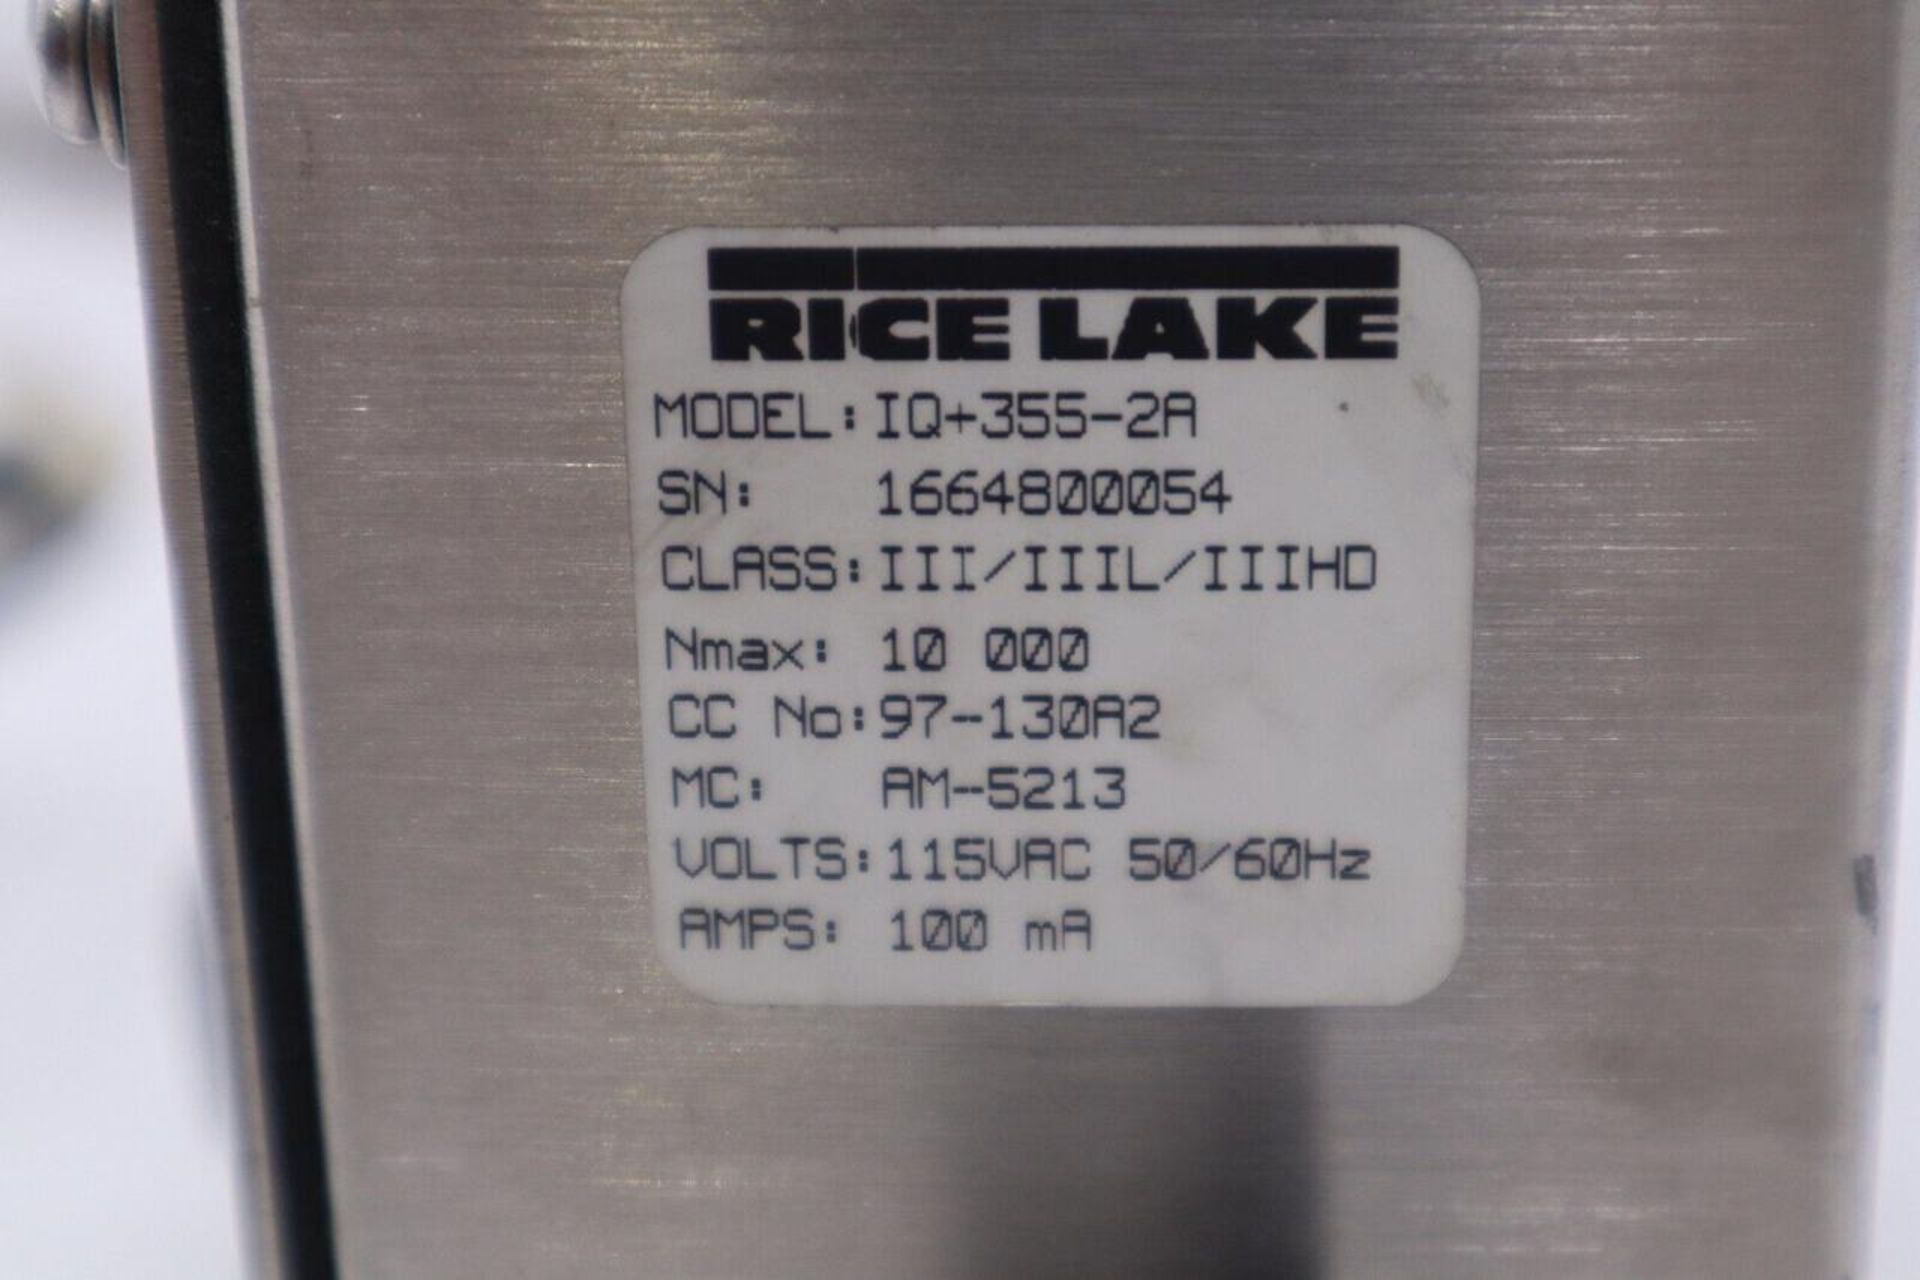 Rice Lake Digital Weight Indicator IQ+355-2A 100mA 115VAC 50/60Hz - Image 2 of 5